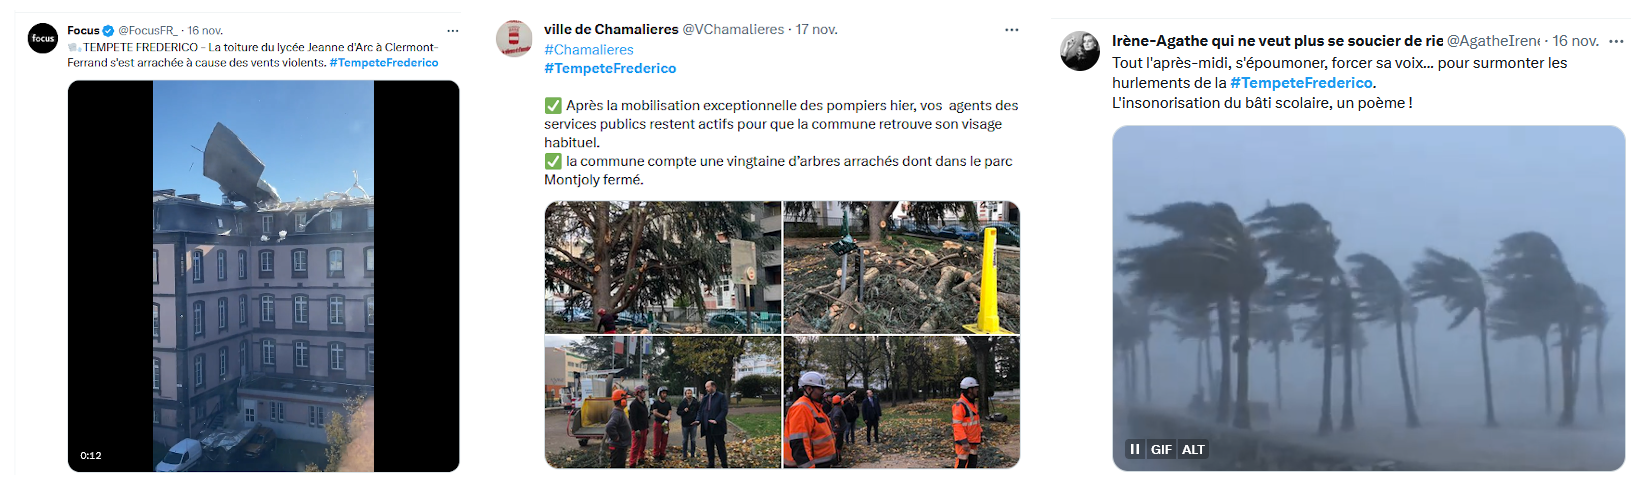 Tuits relativos a algunos de los impactos ocasionados por la borrasca en Francia.